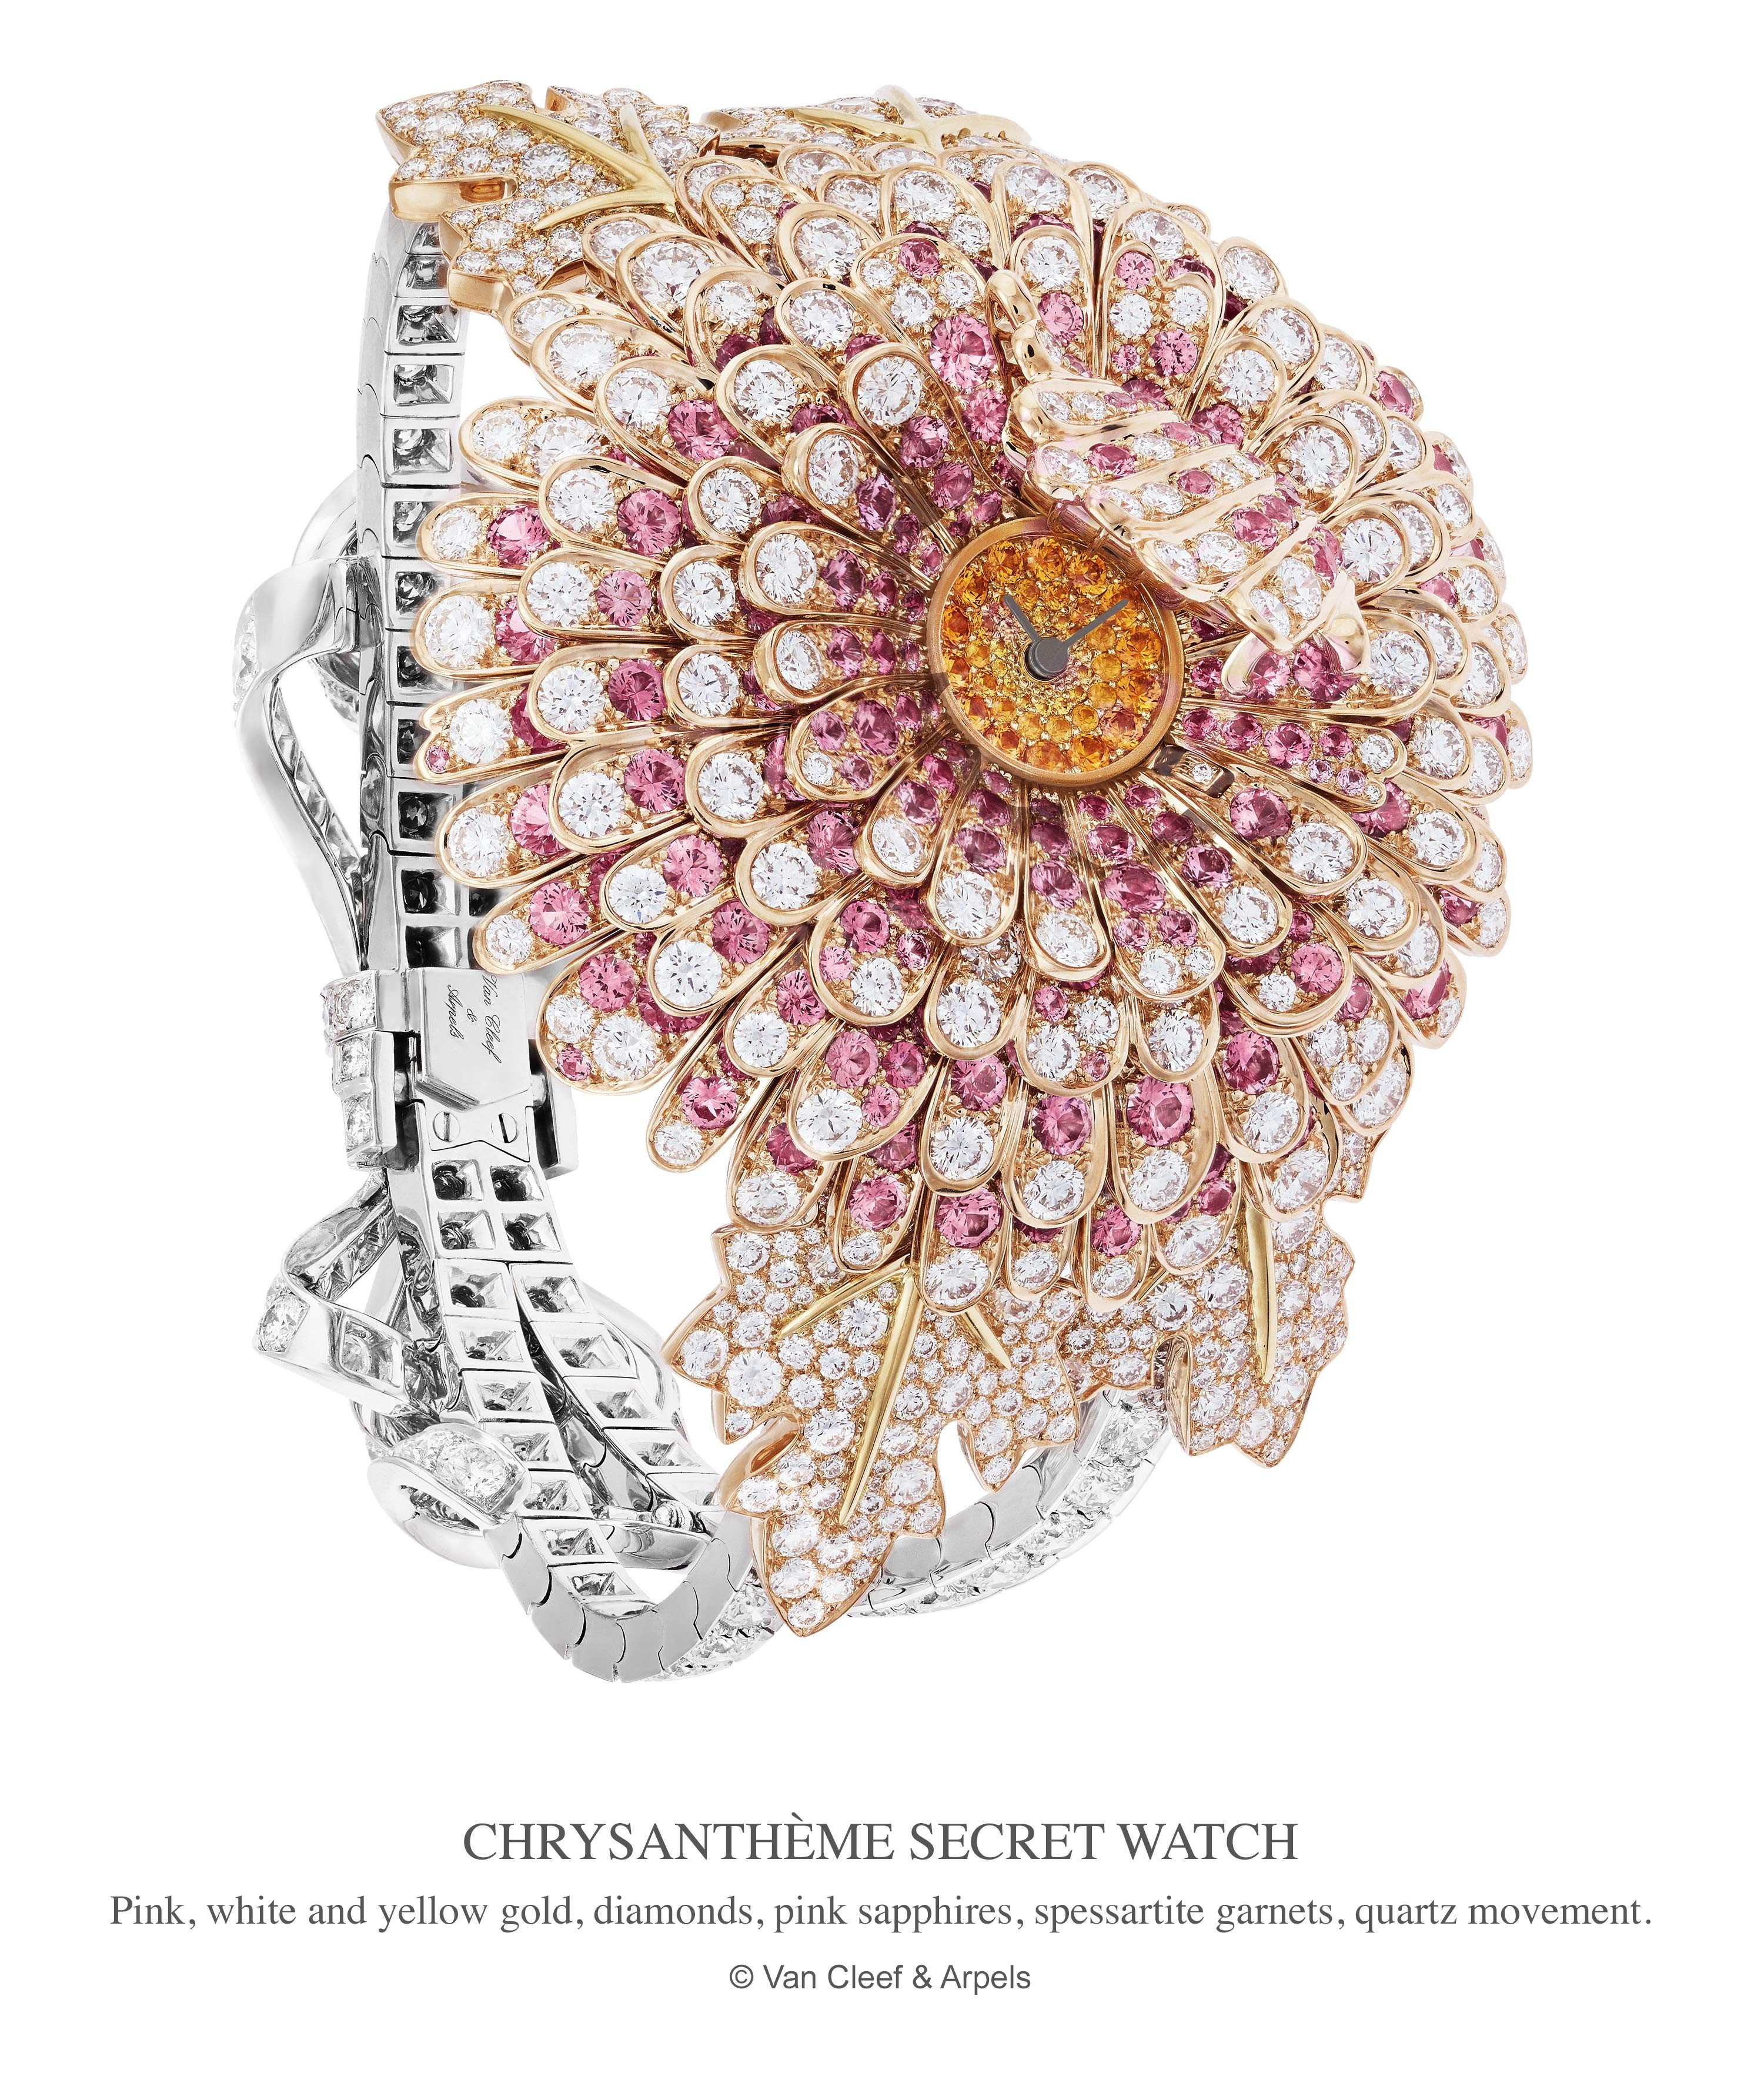 Chanel L'Esprit du Lion 2018 high jewellery review.